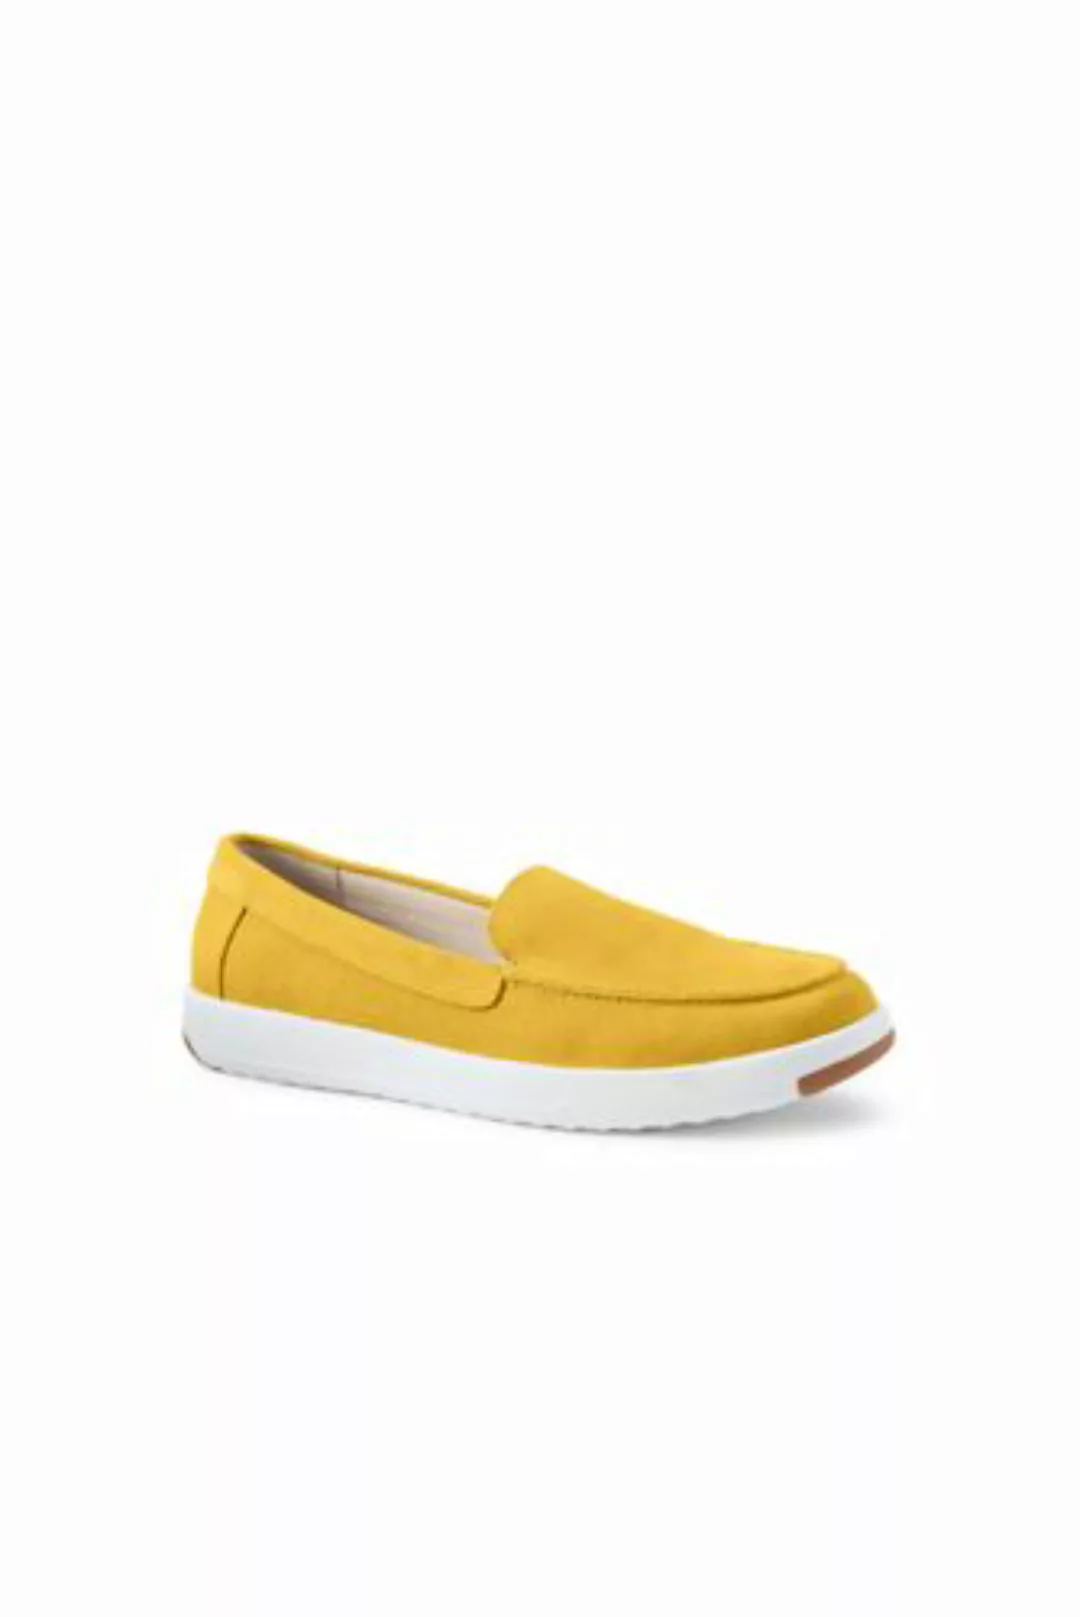 Federleichte Komfort-Loafer, Damen, Größe: 37 Weit, Gelb, Rauleder, by Land günstig online kaufen